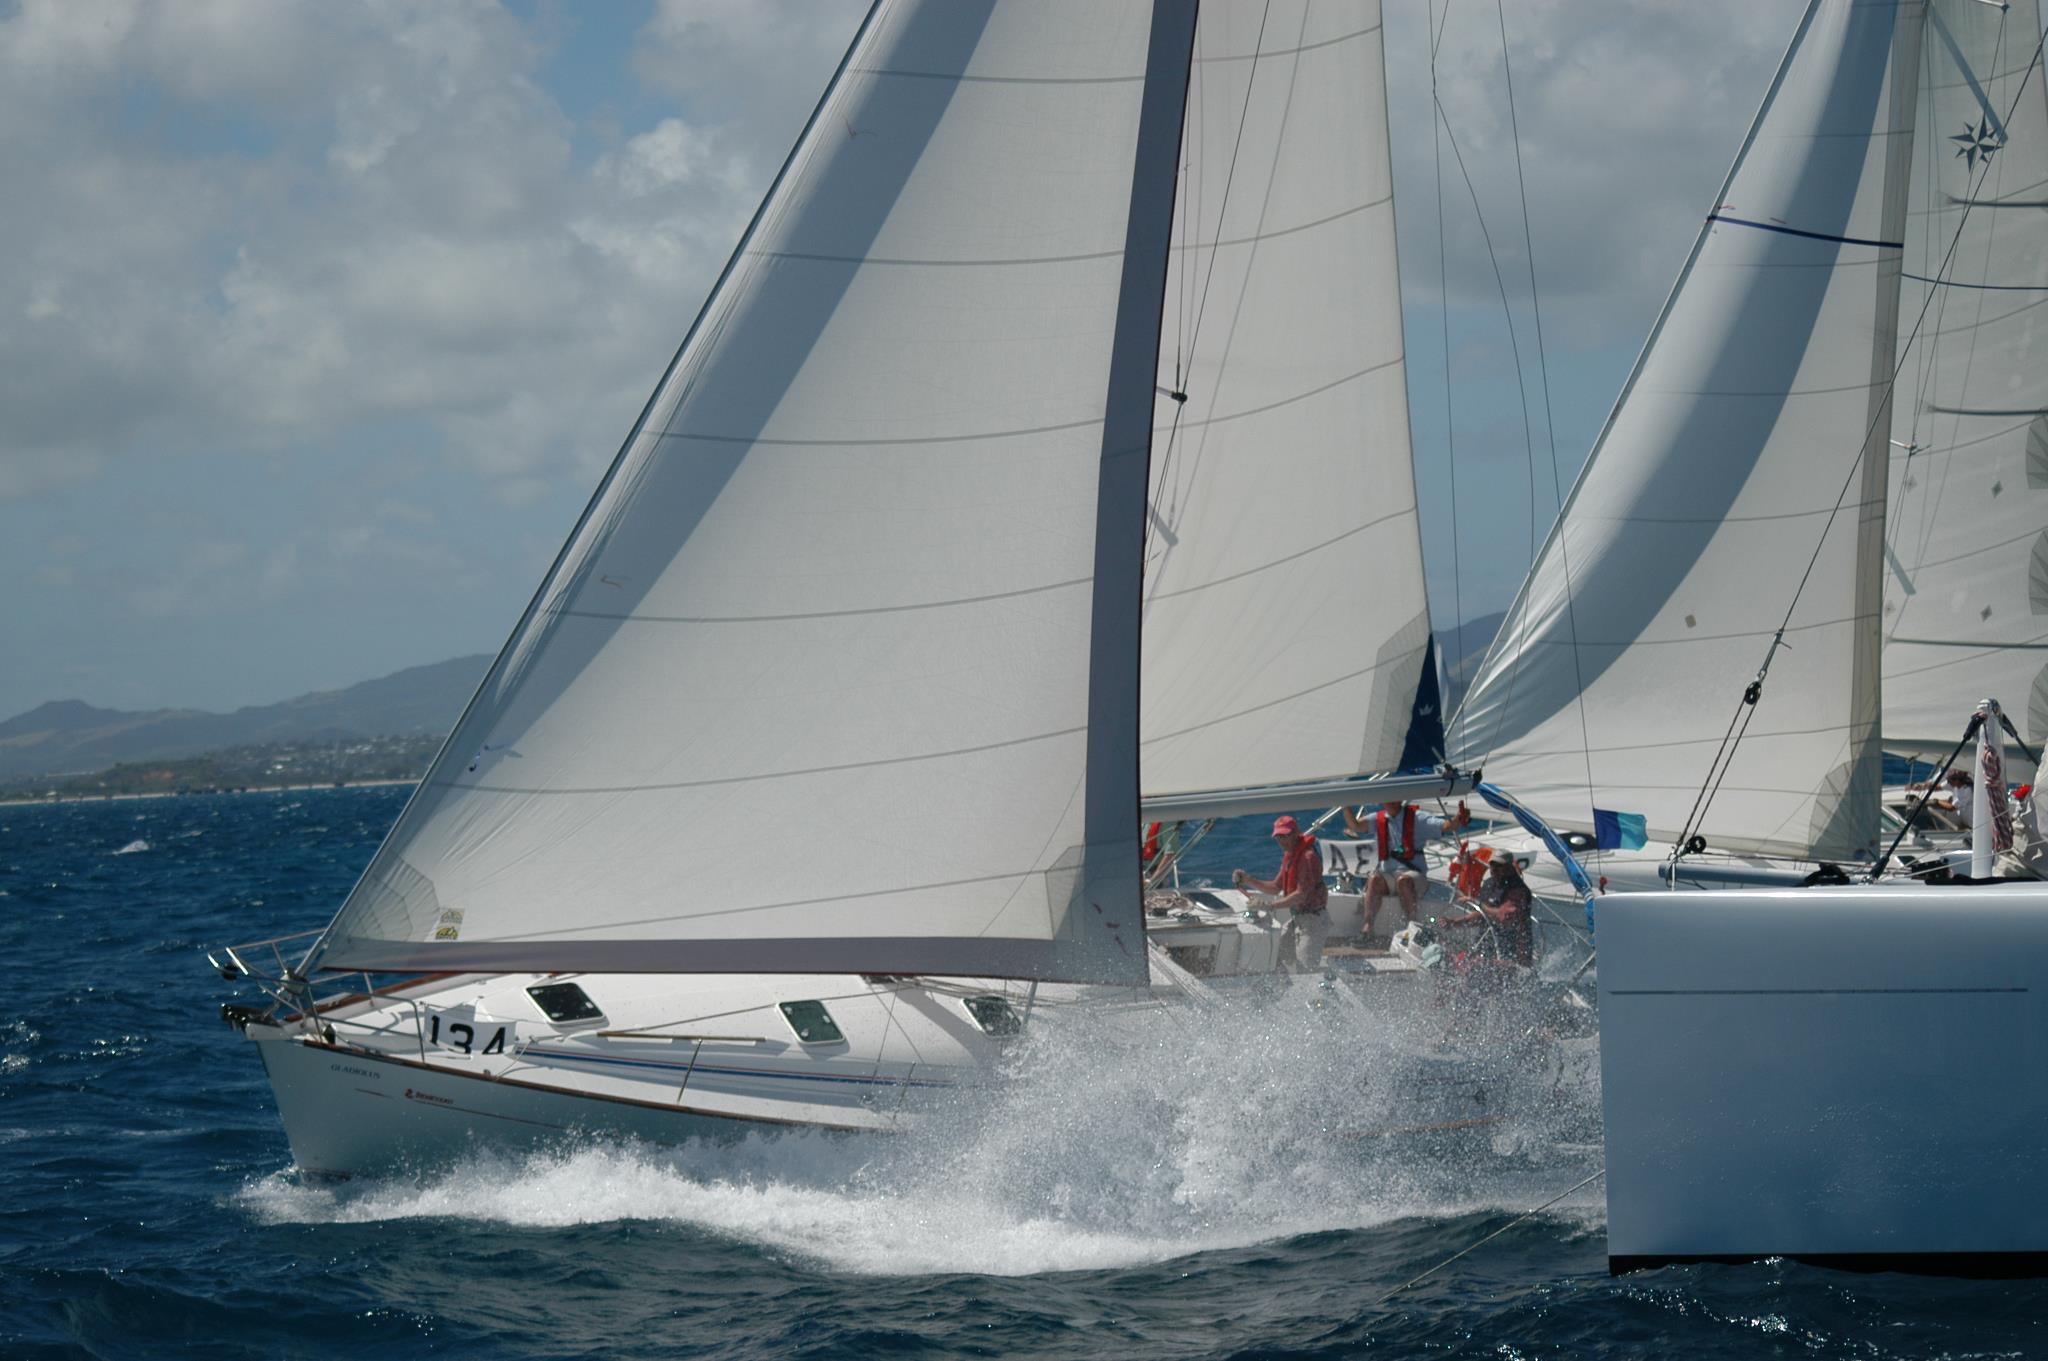 Segelevents: Antigua Sailing Week & Heinecken Regatta